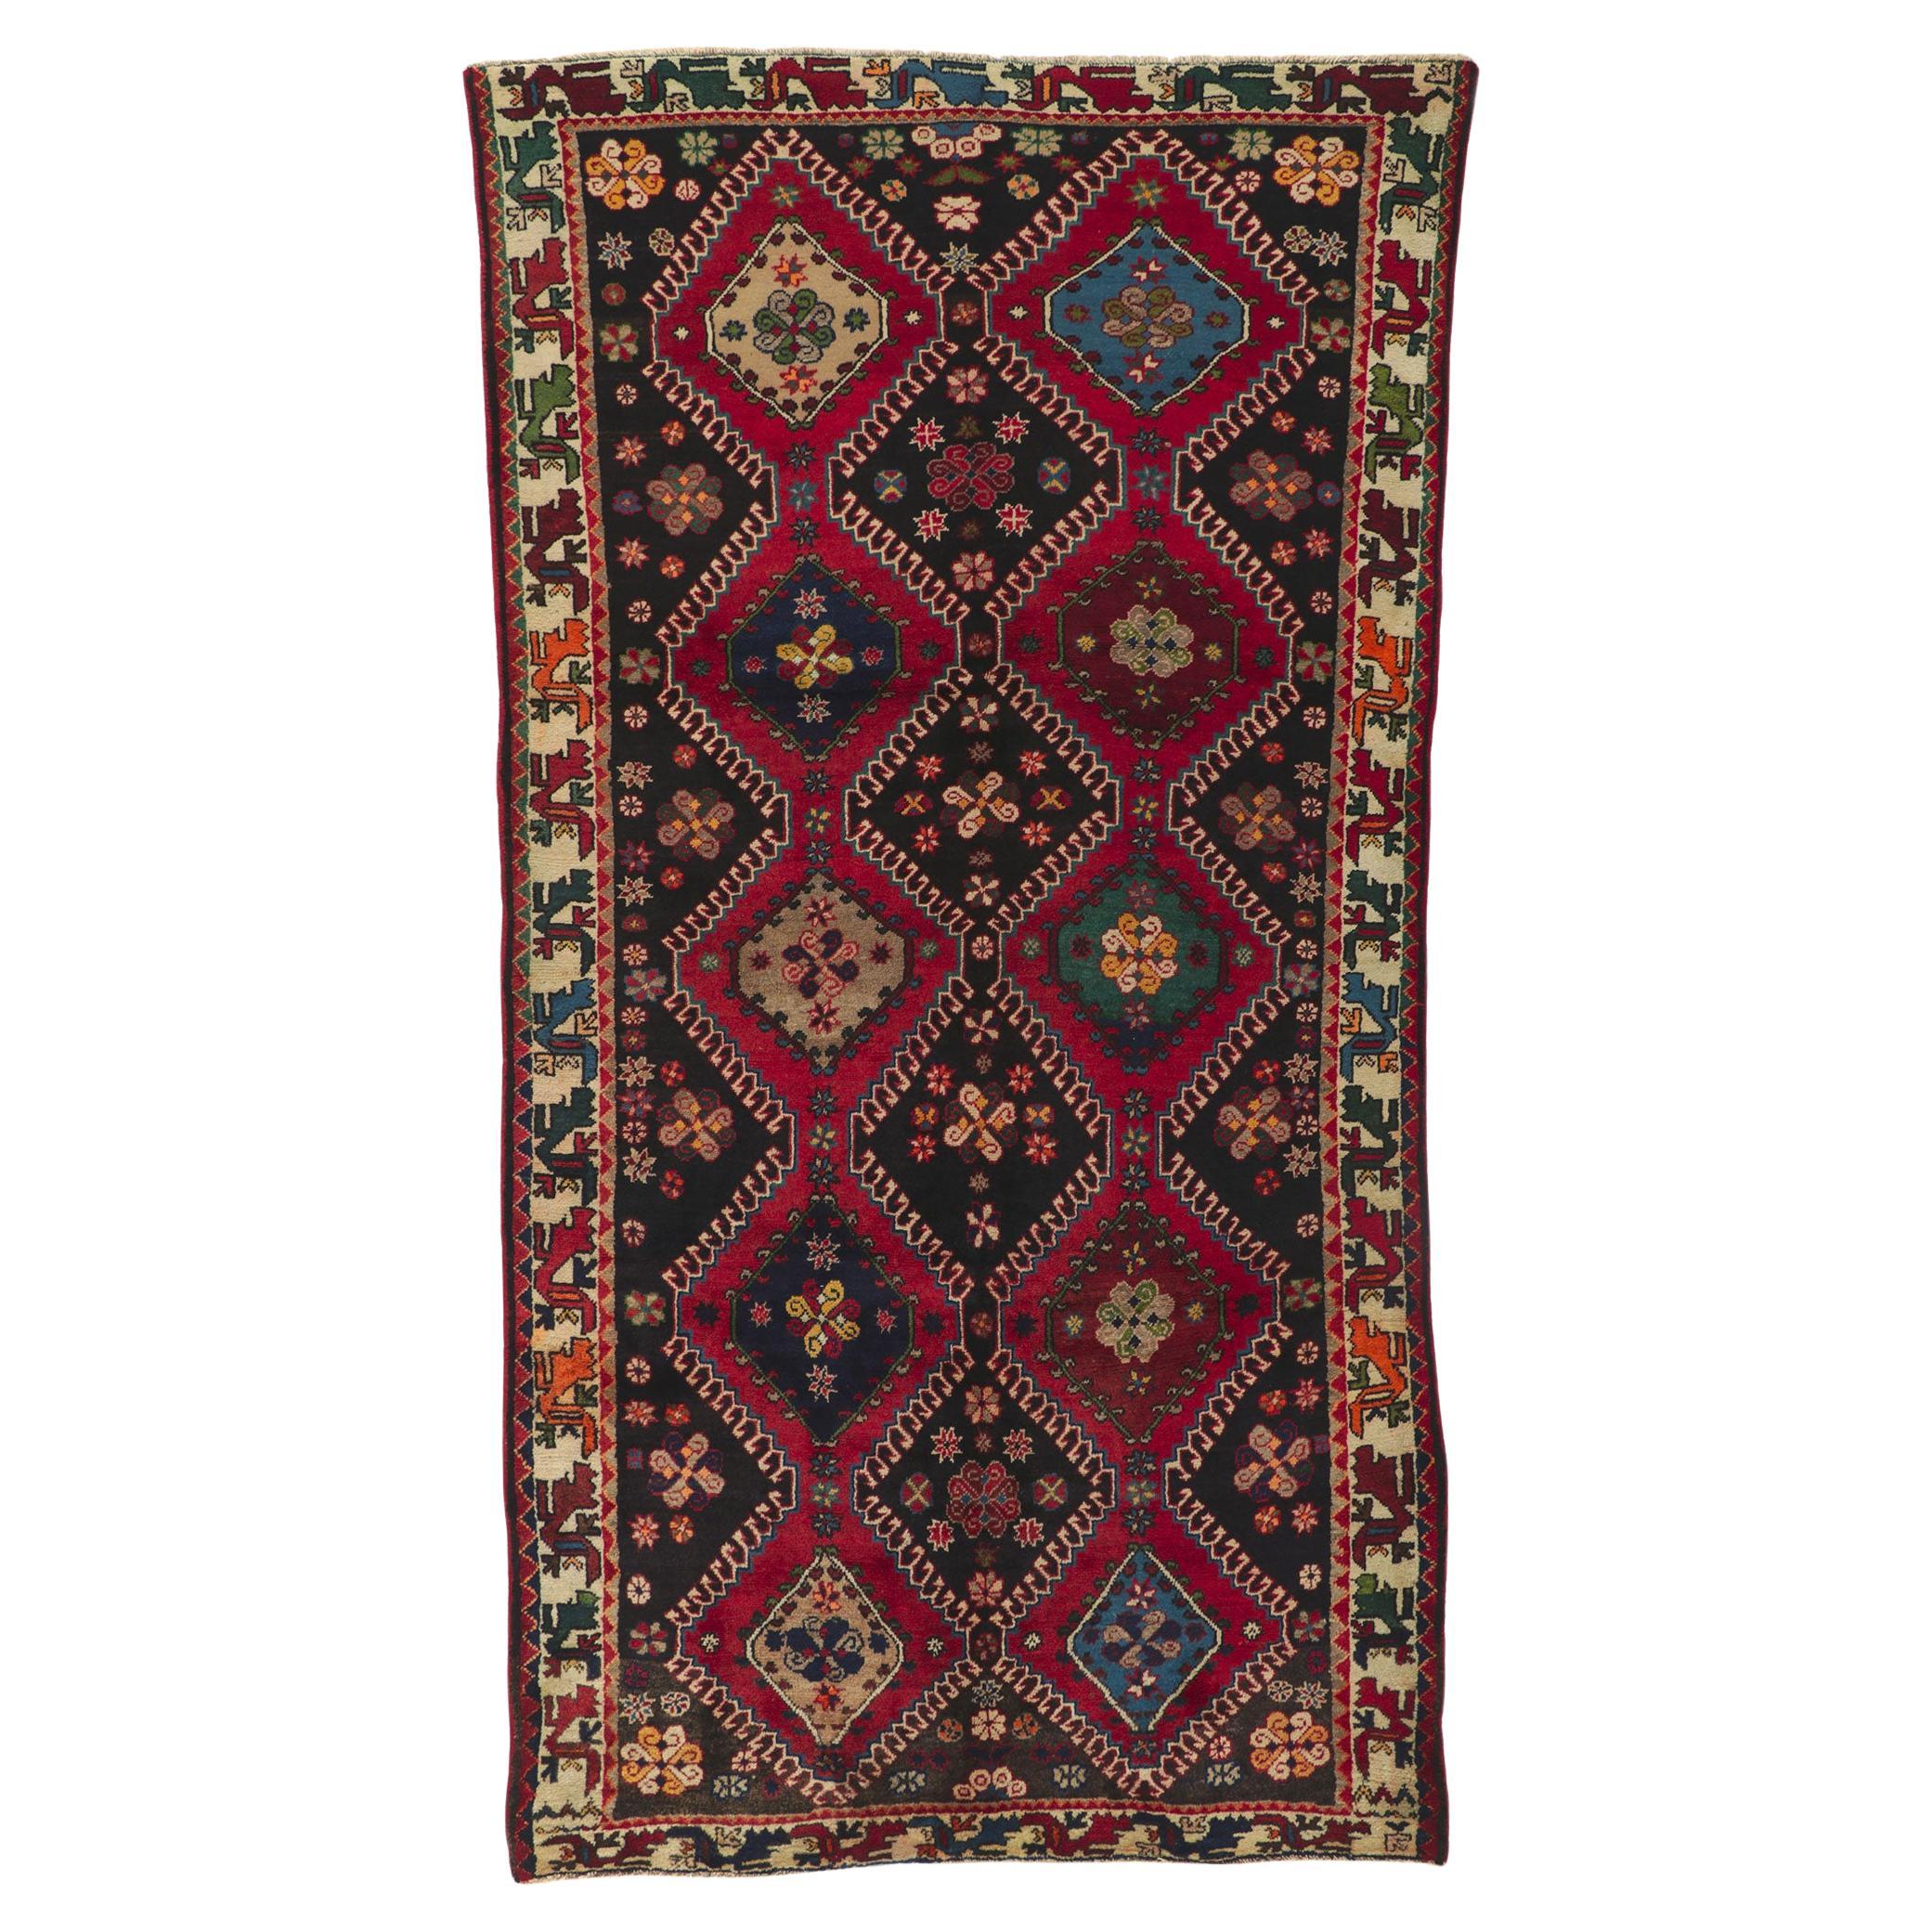 Persischer Shiraz-Teppich im Vintage-Stil, Stammeskunst auf modernem Masculine- Appeal